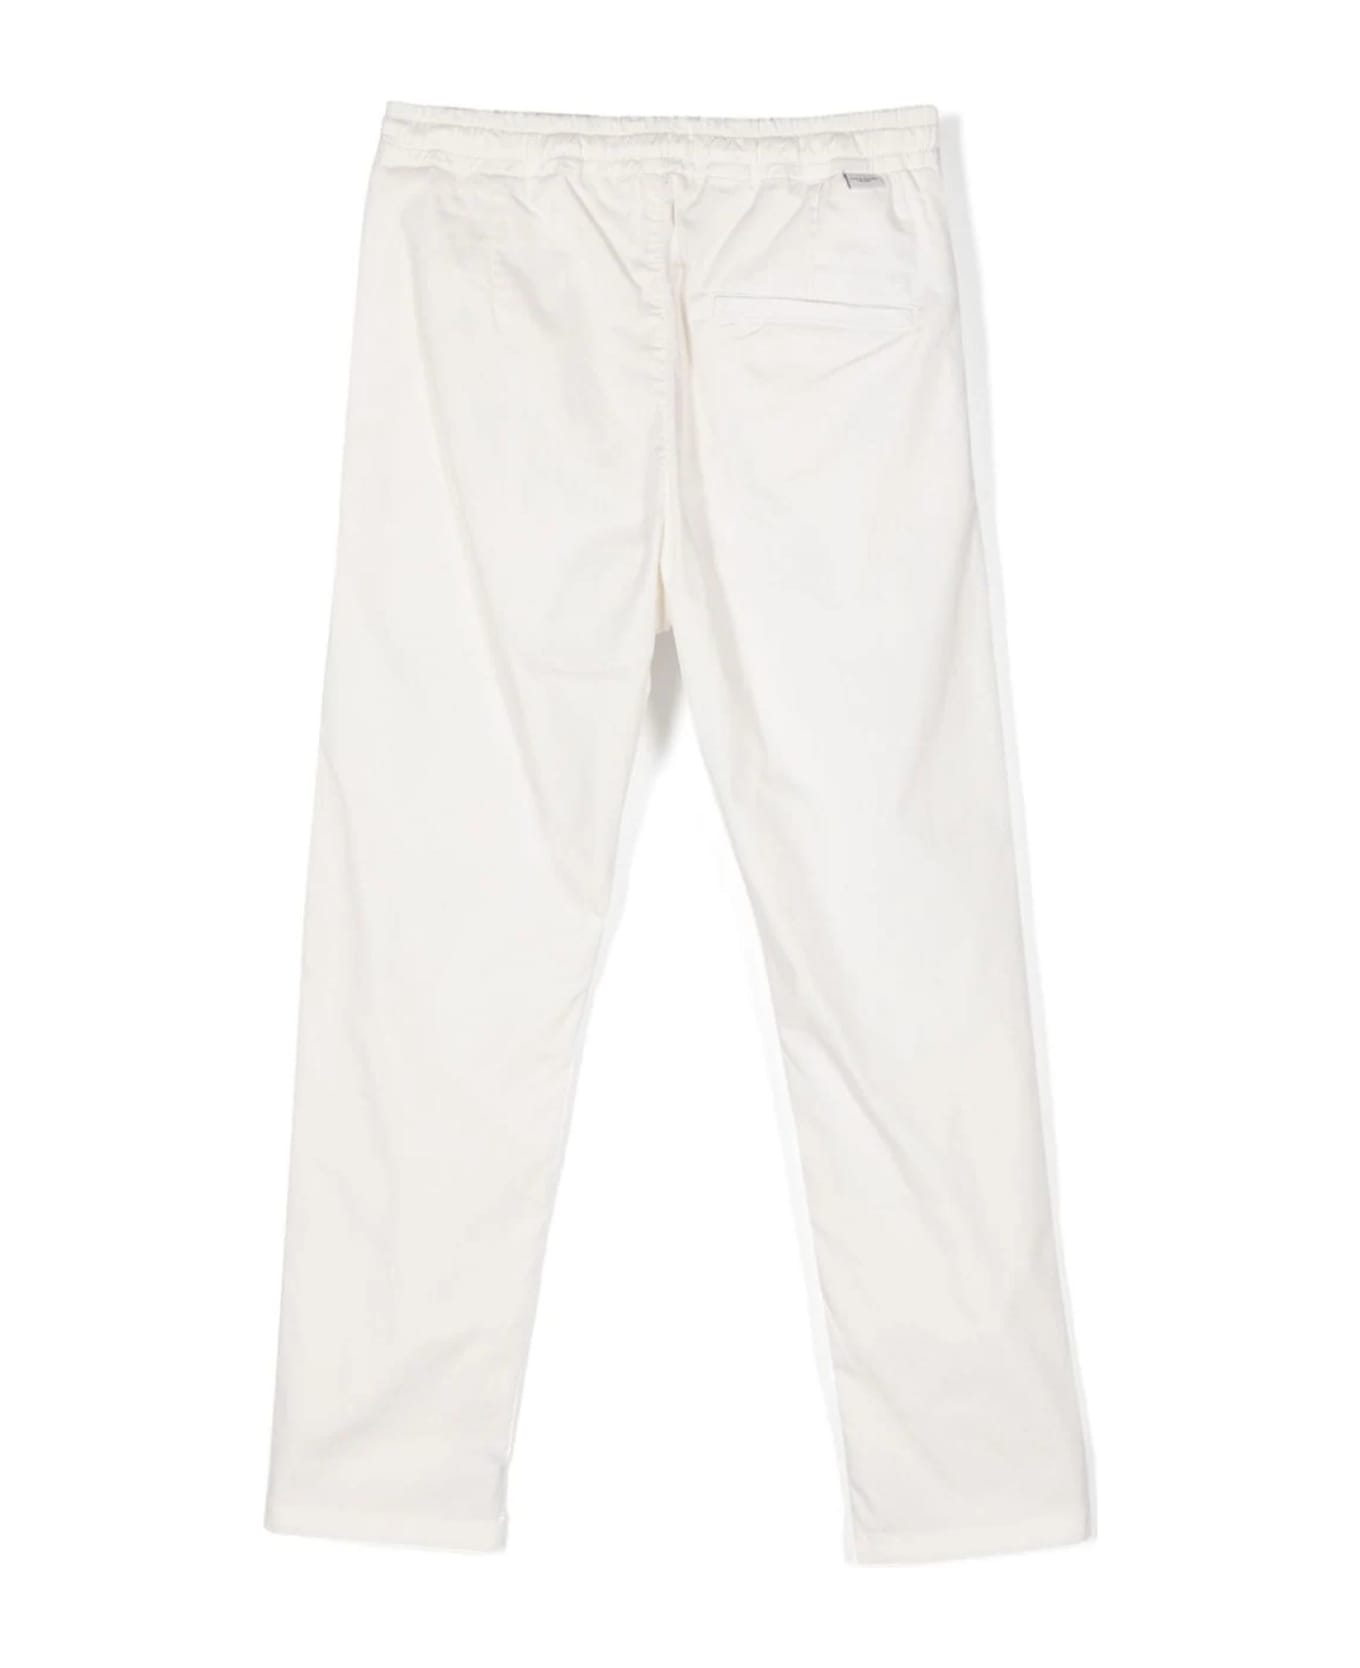 Paolo Pecora Trousers White - White ボトムス